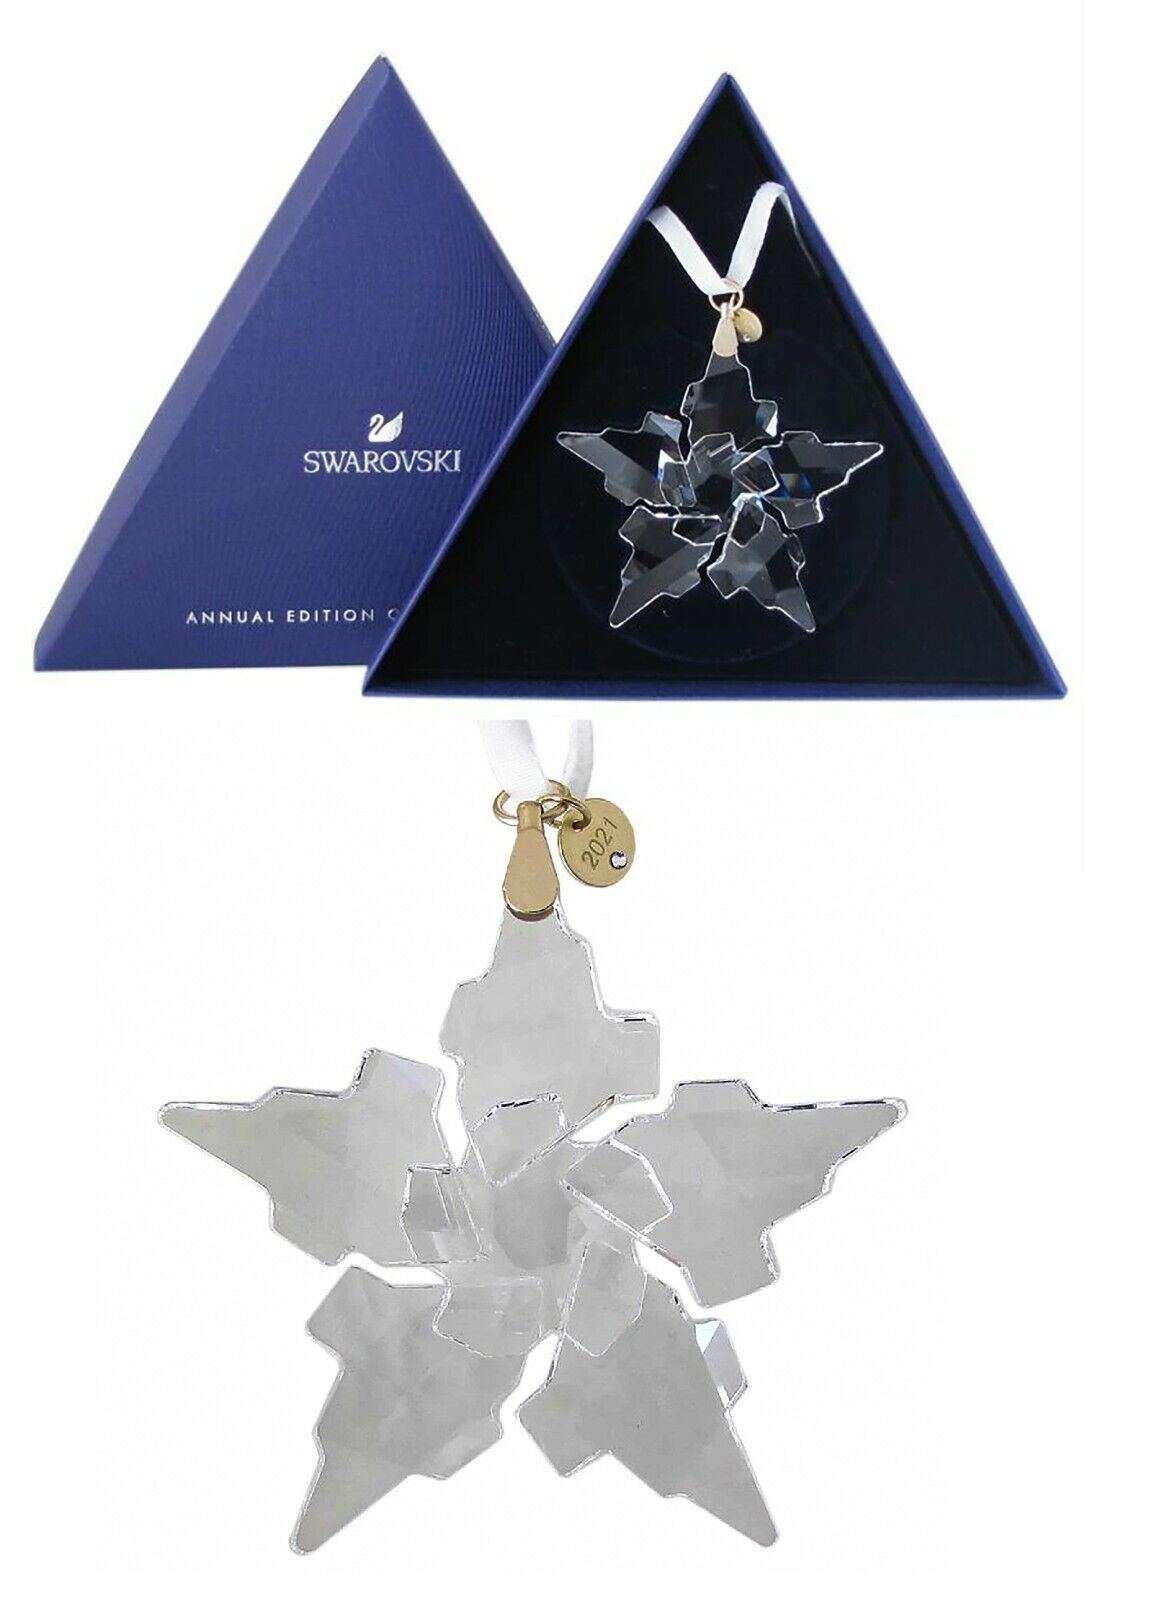 NEW Authentic Swarovski 5557796 Annual Edition 2021 Anniversary Star Ornament